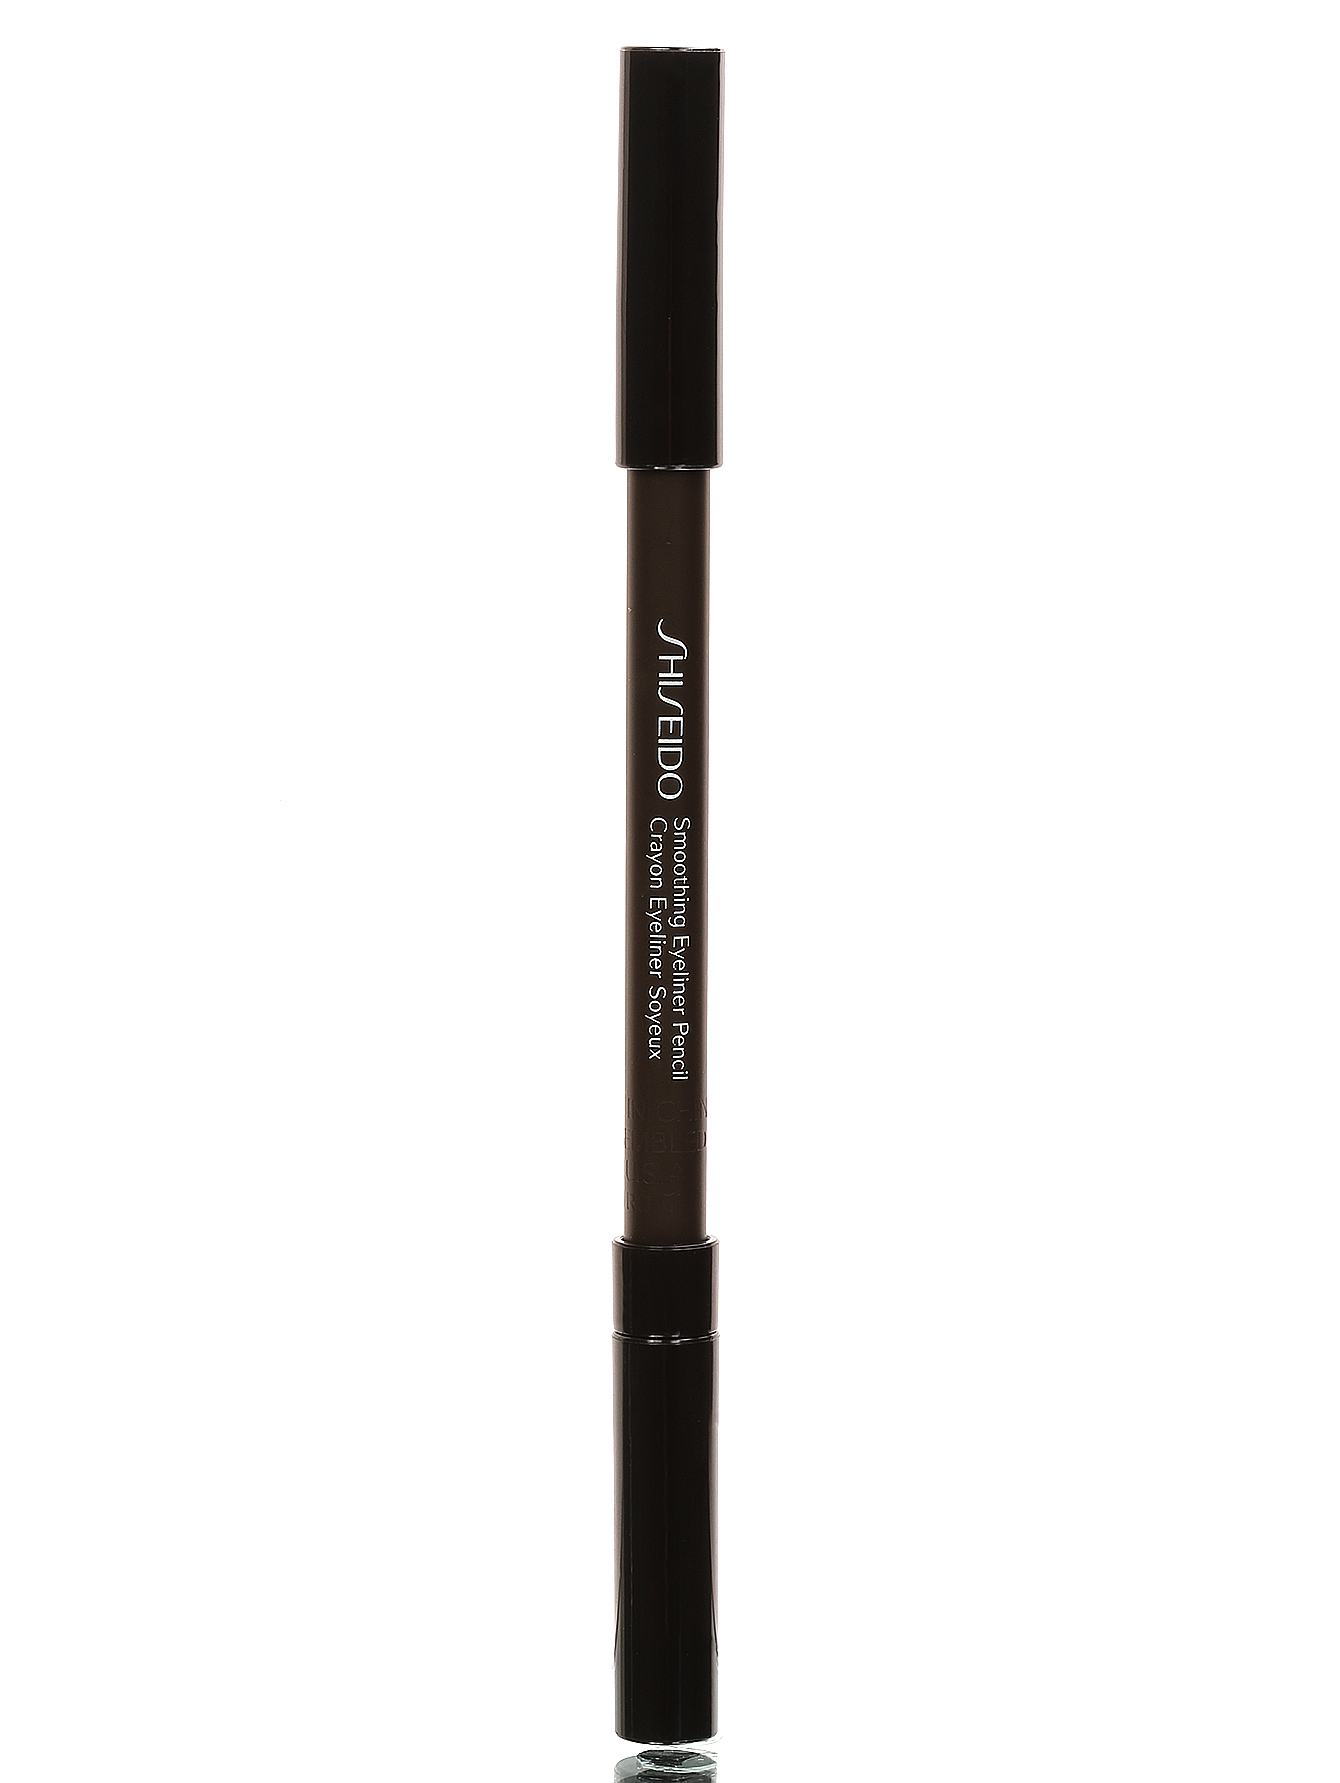 Карандаш для век - BR602, Eyebrow Pencil - Модель Верх-Низ